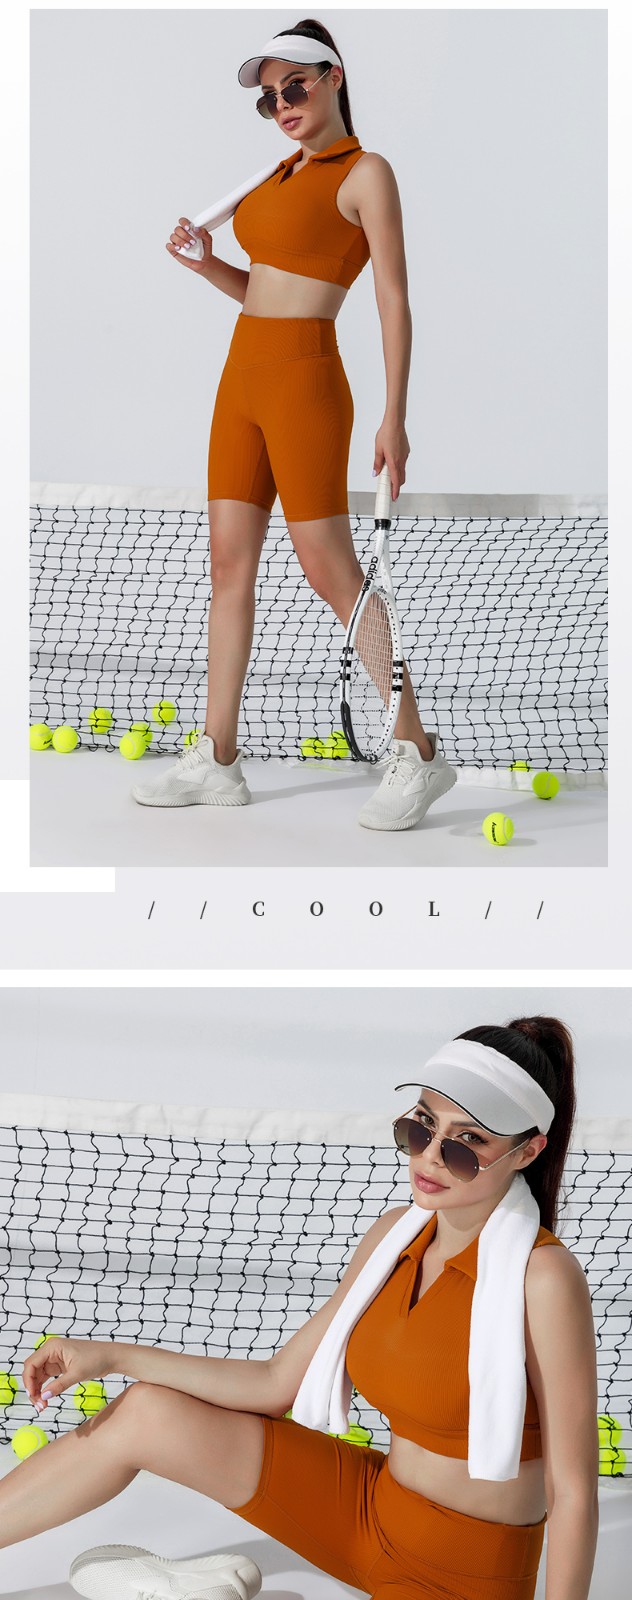 INGOR SPORTSWEAR woman tennis wear production-4